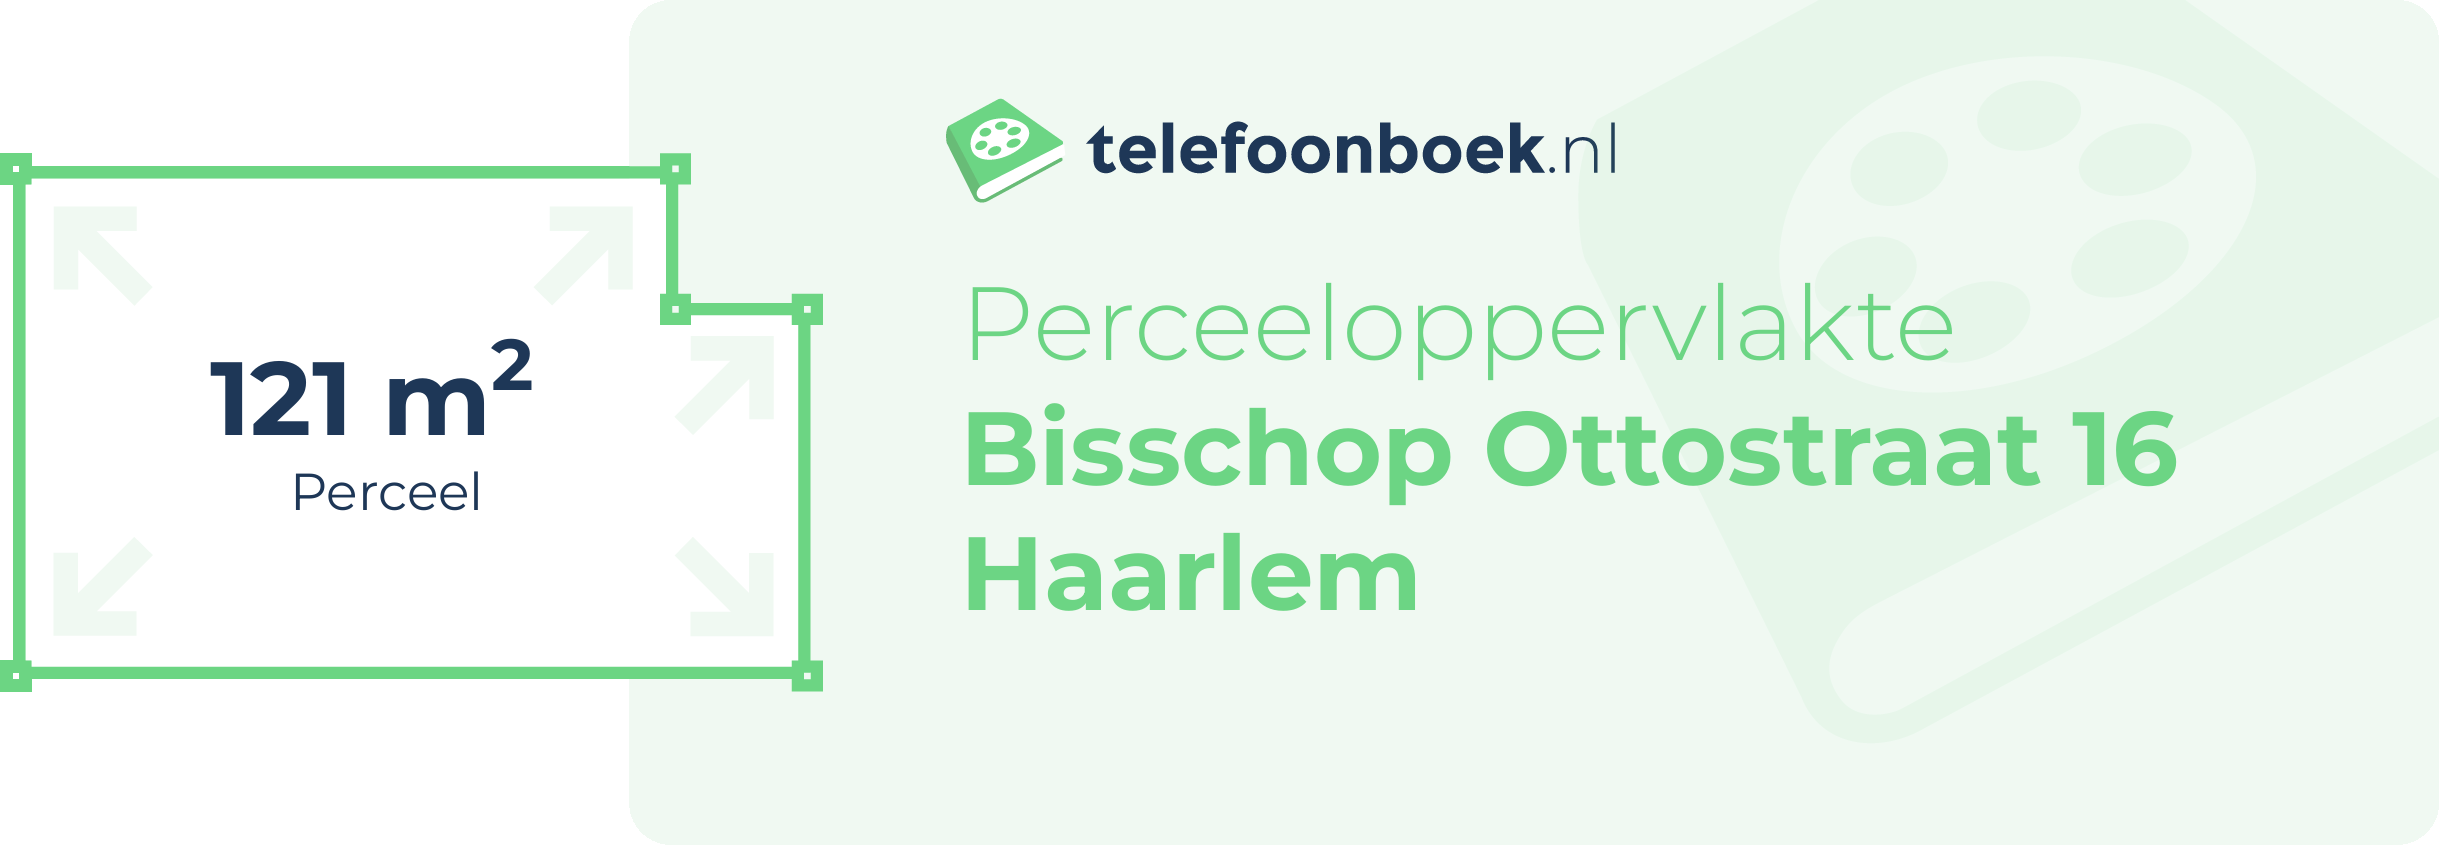 Perceeloppervlakte Bisschop Ottostraat 16 Haarlem